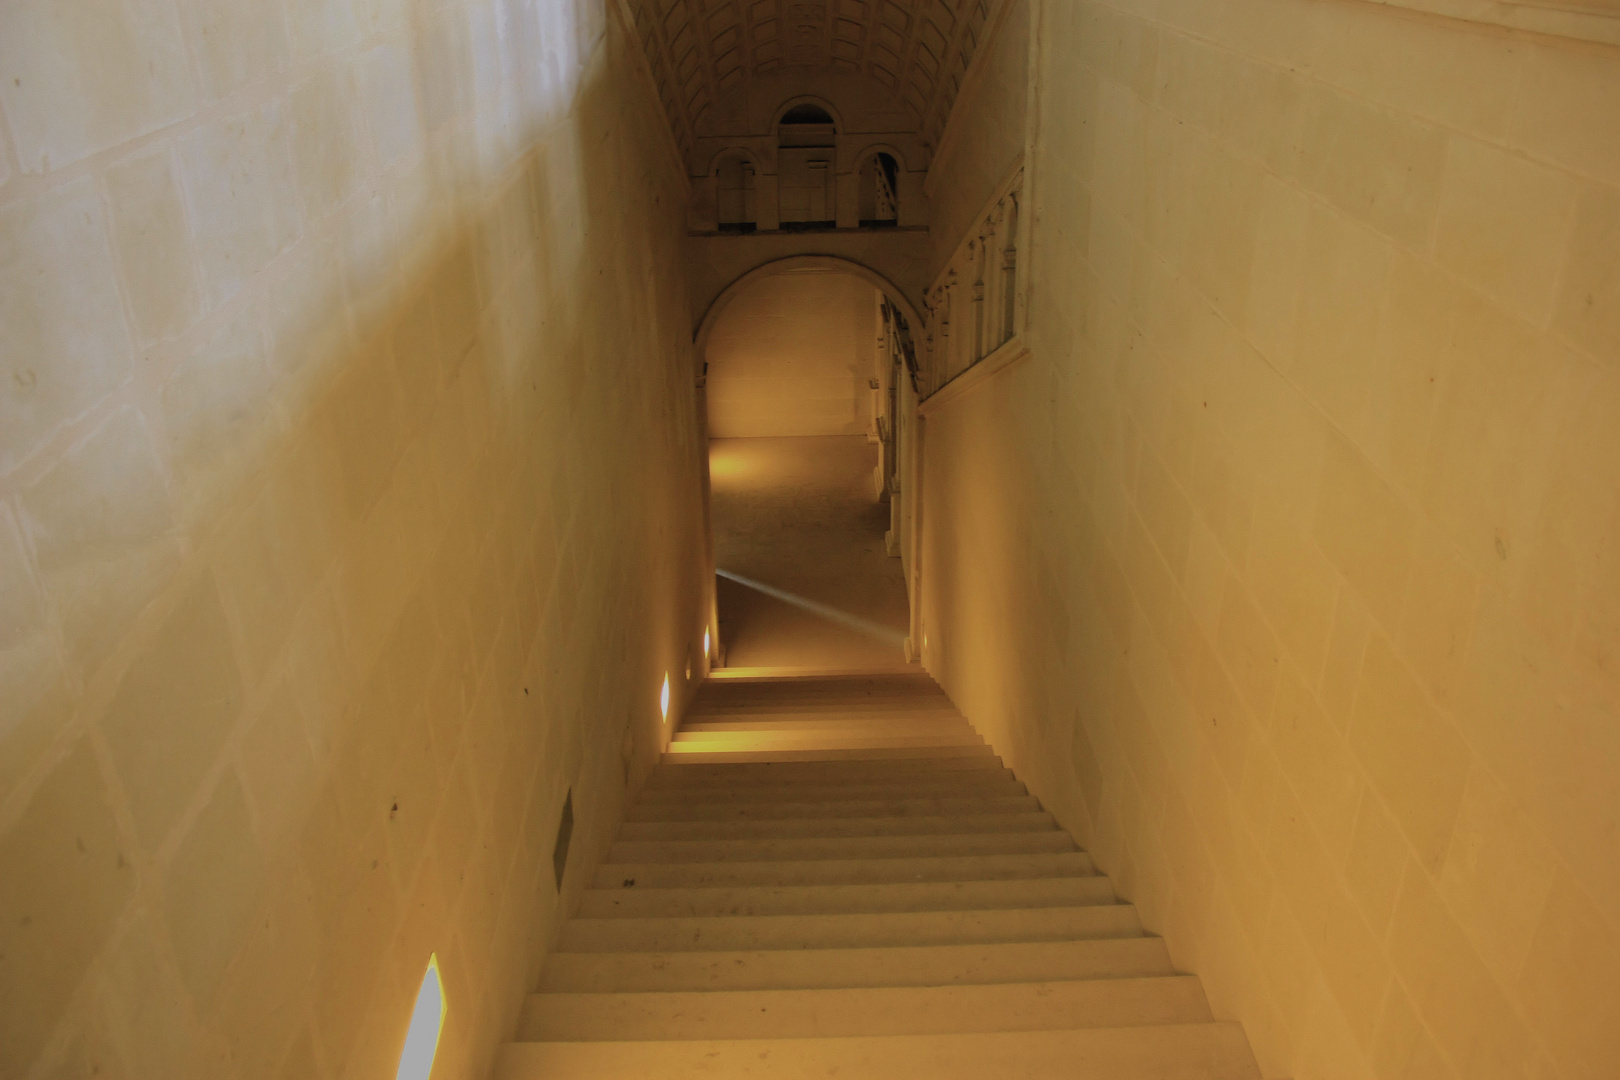 Escaliers et Couloirs